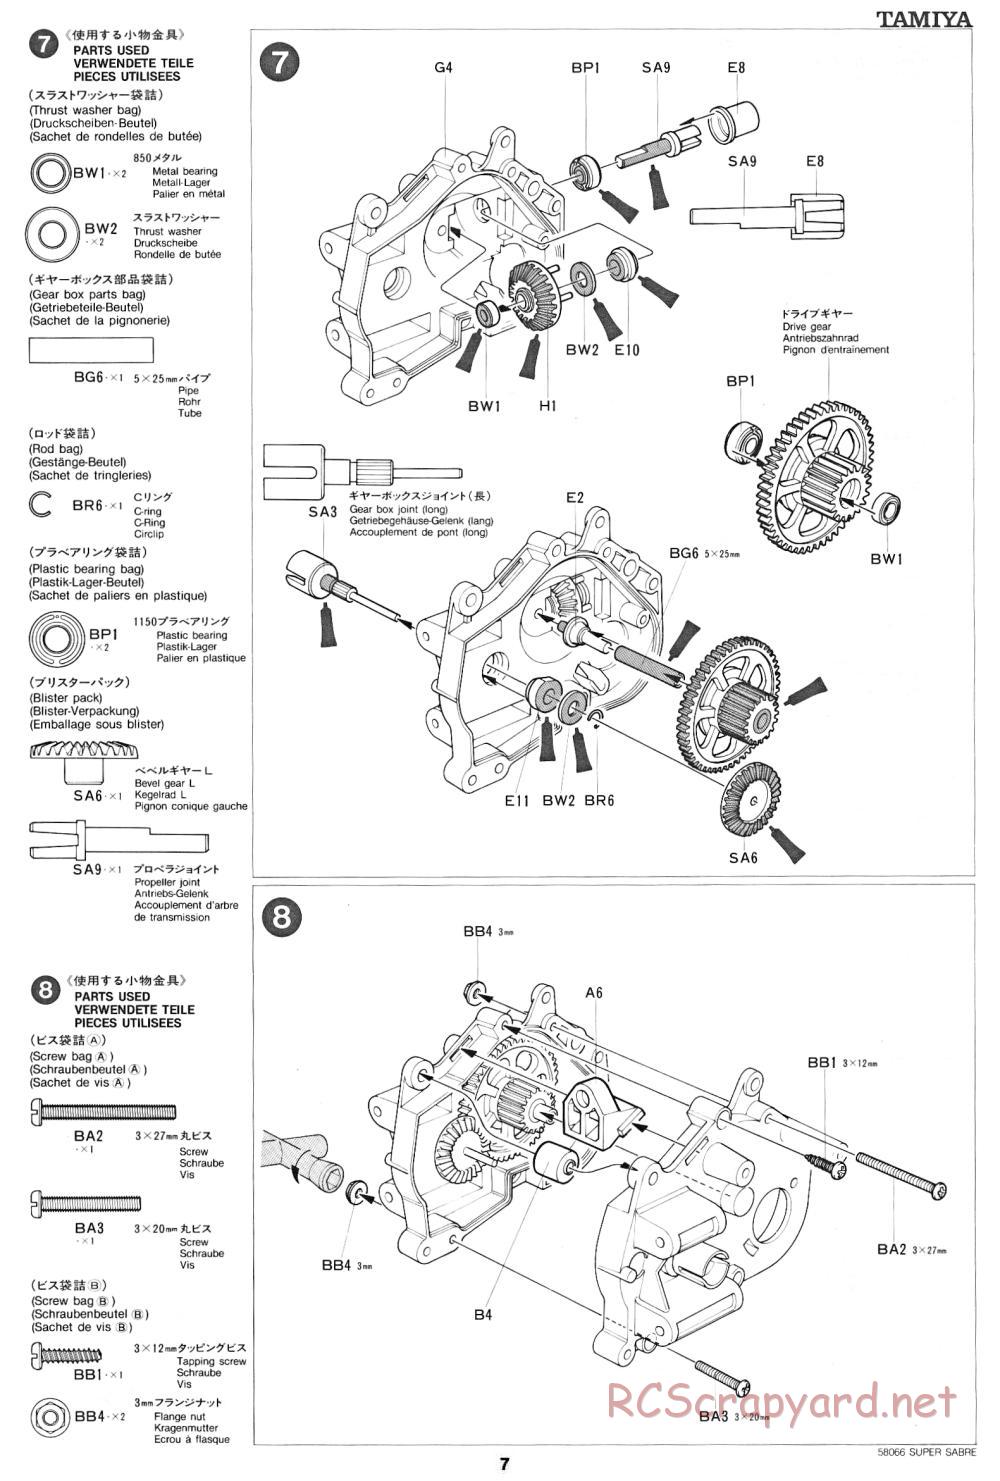 Tamiya - Super Sabre - 58066 - Manual - Page 7